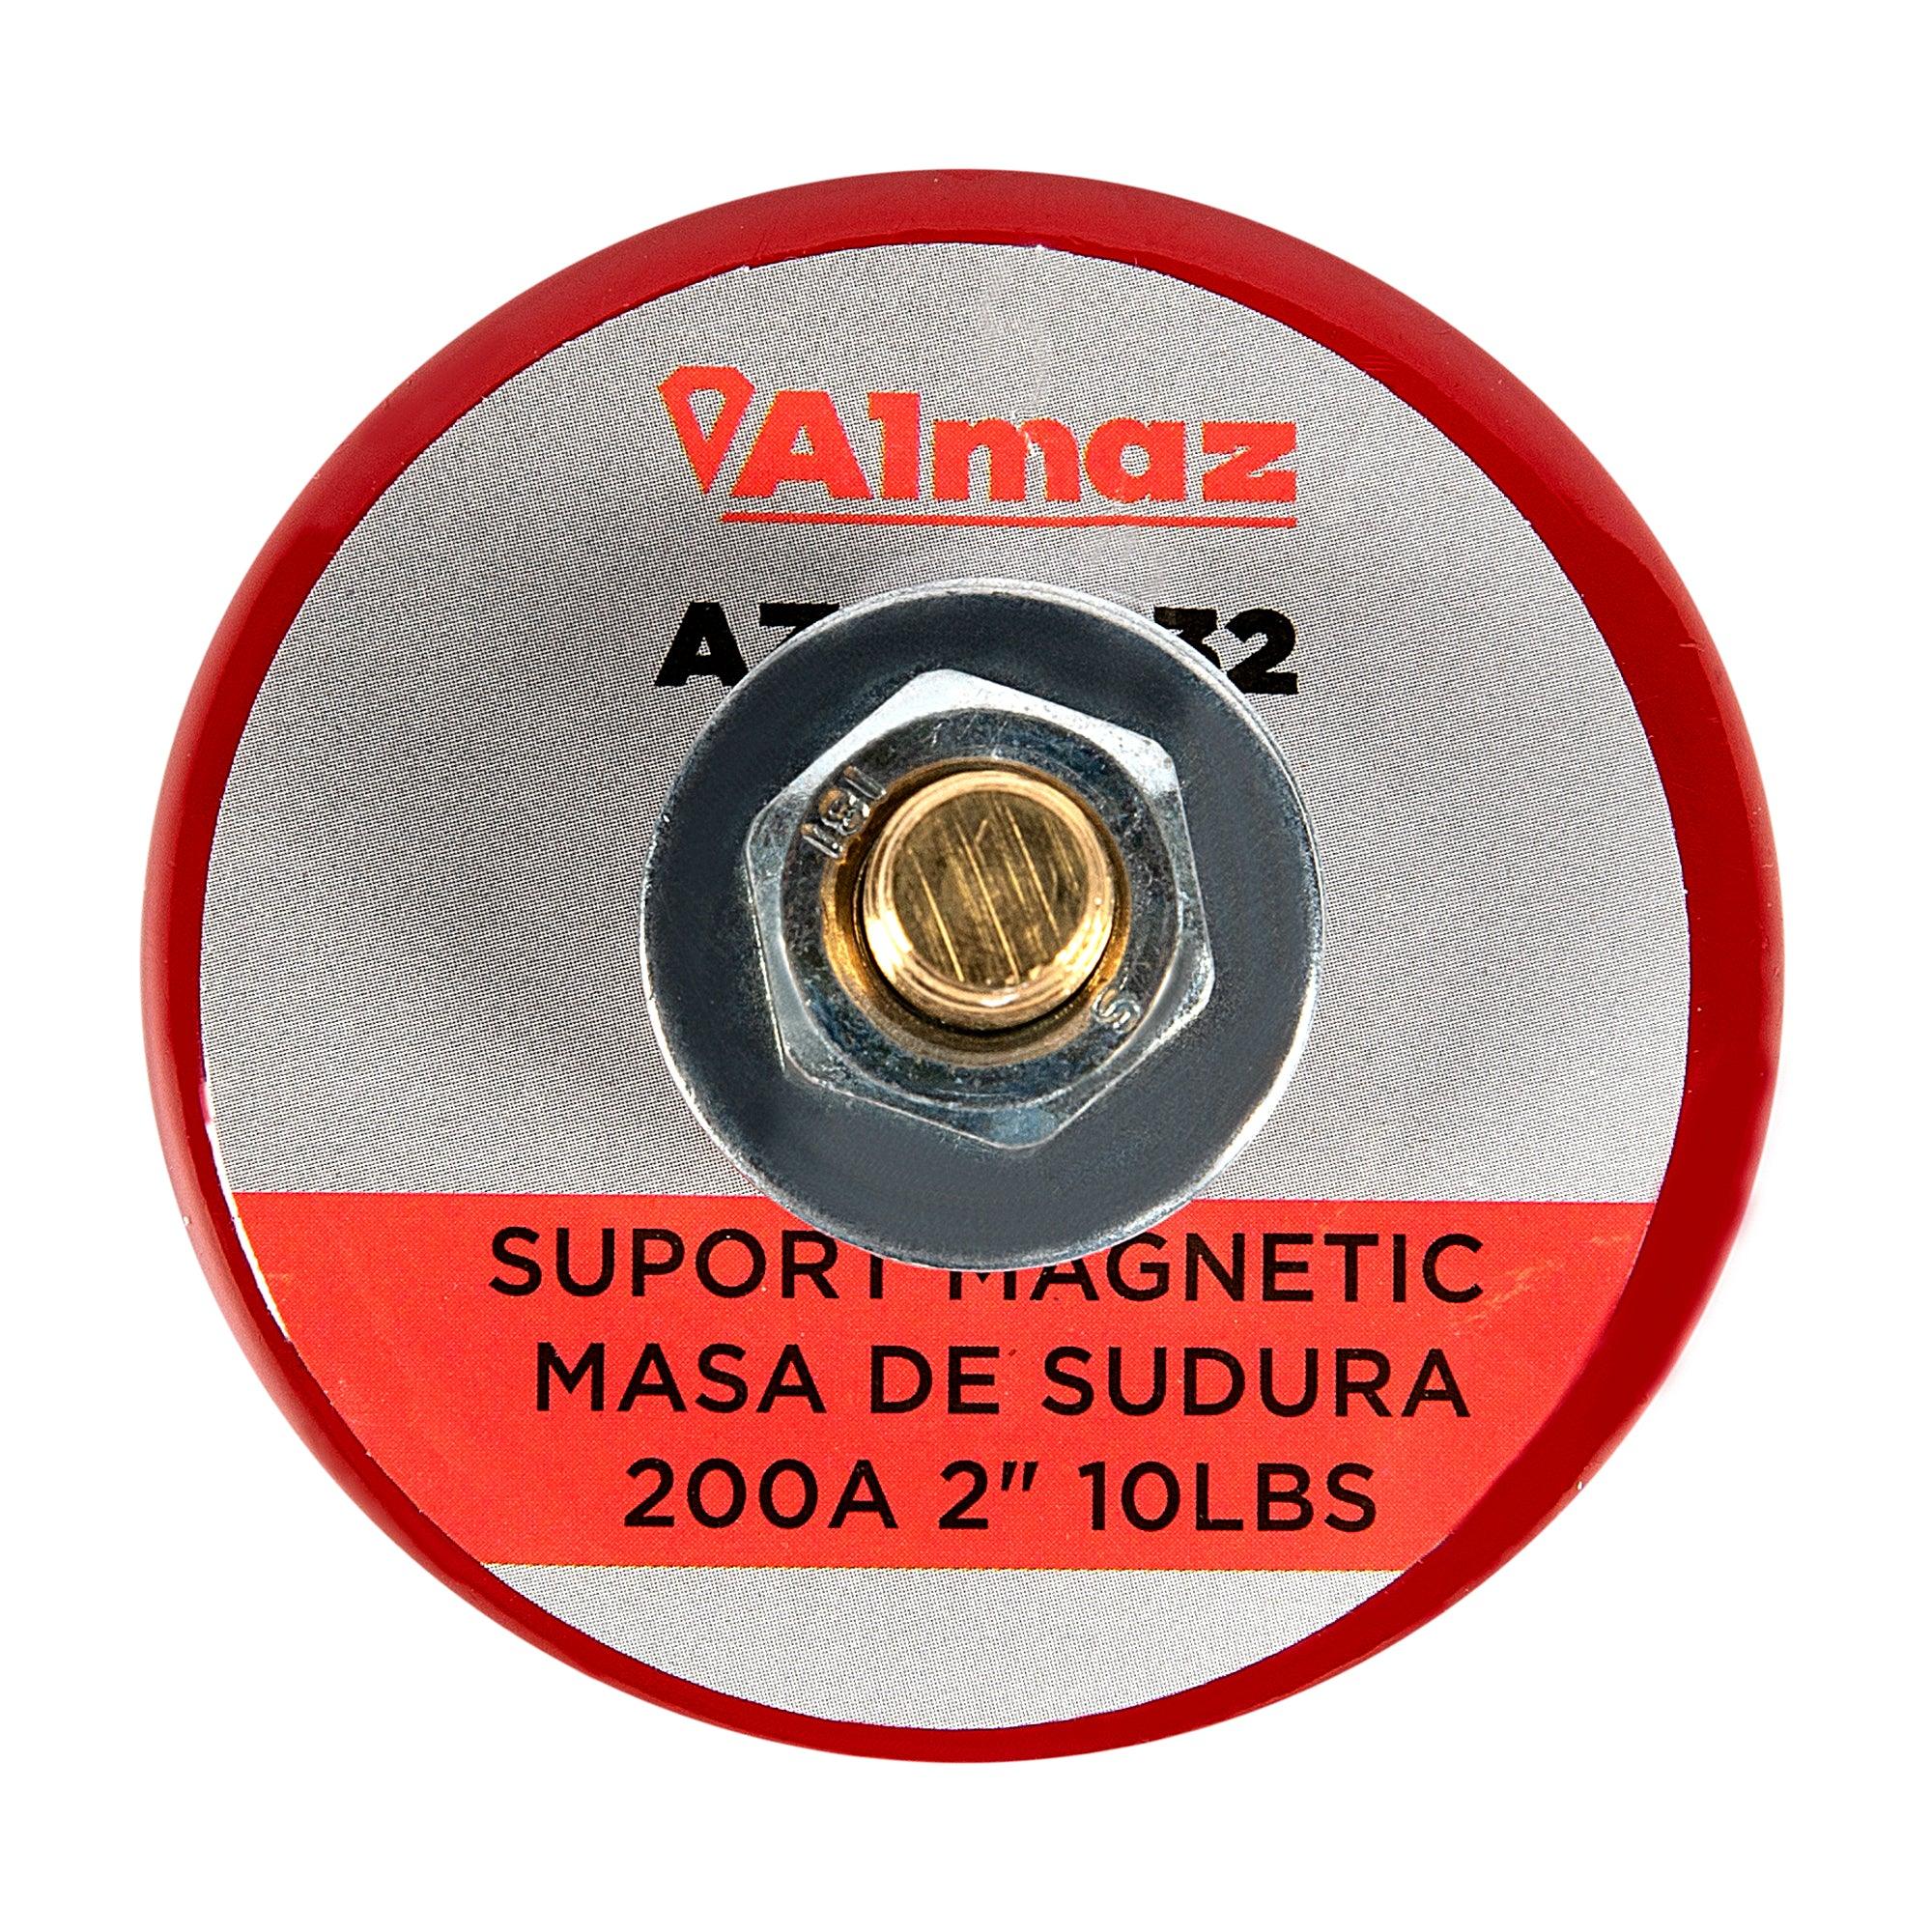 Suport magnetic masa de sudura ALMAZ, AZ-ES032, 200 A, 2 inch, capacitate 4.5 KG - ZEP.RO - Ți-e la îndemână!